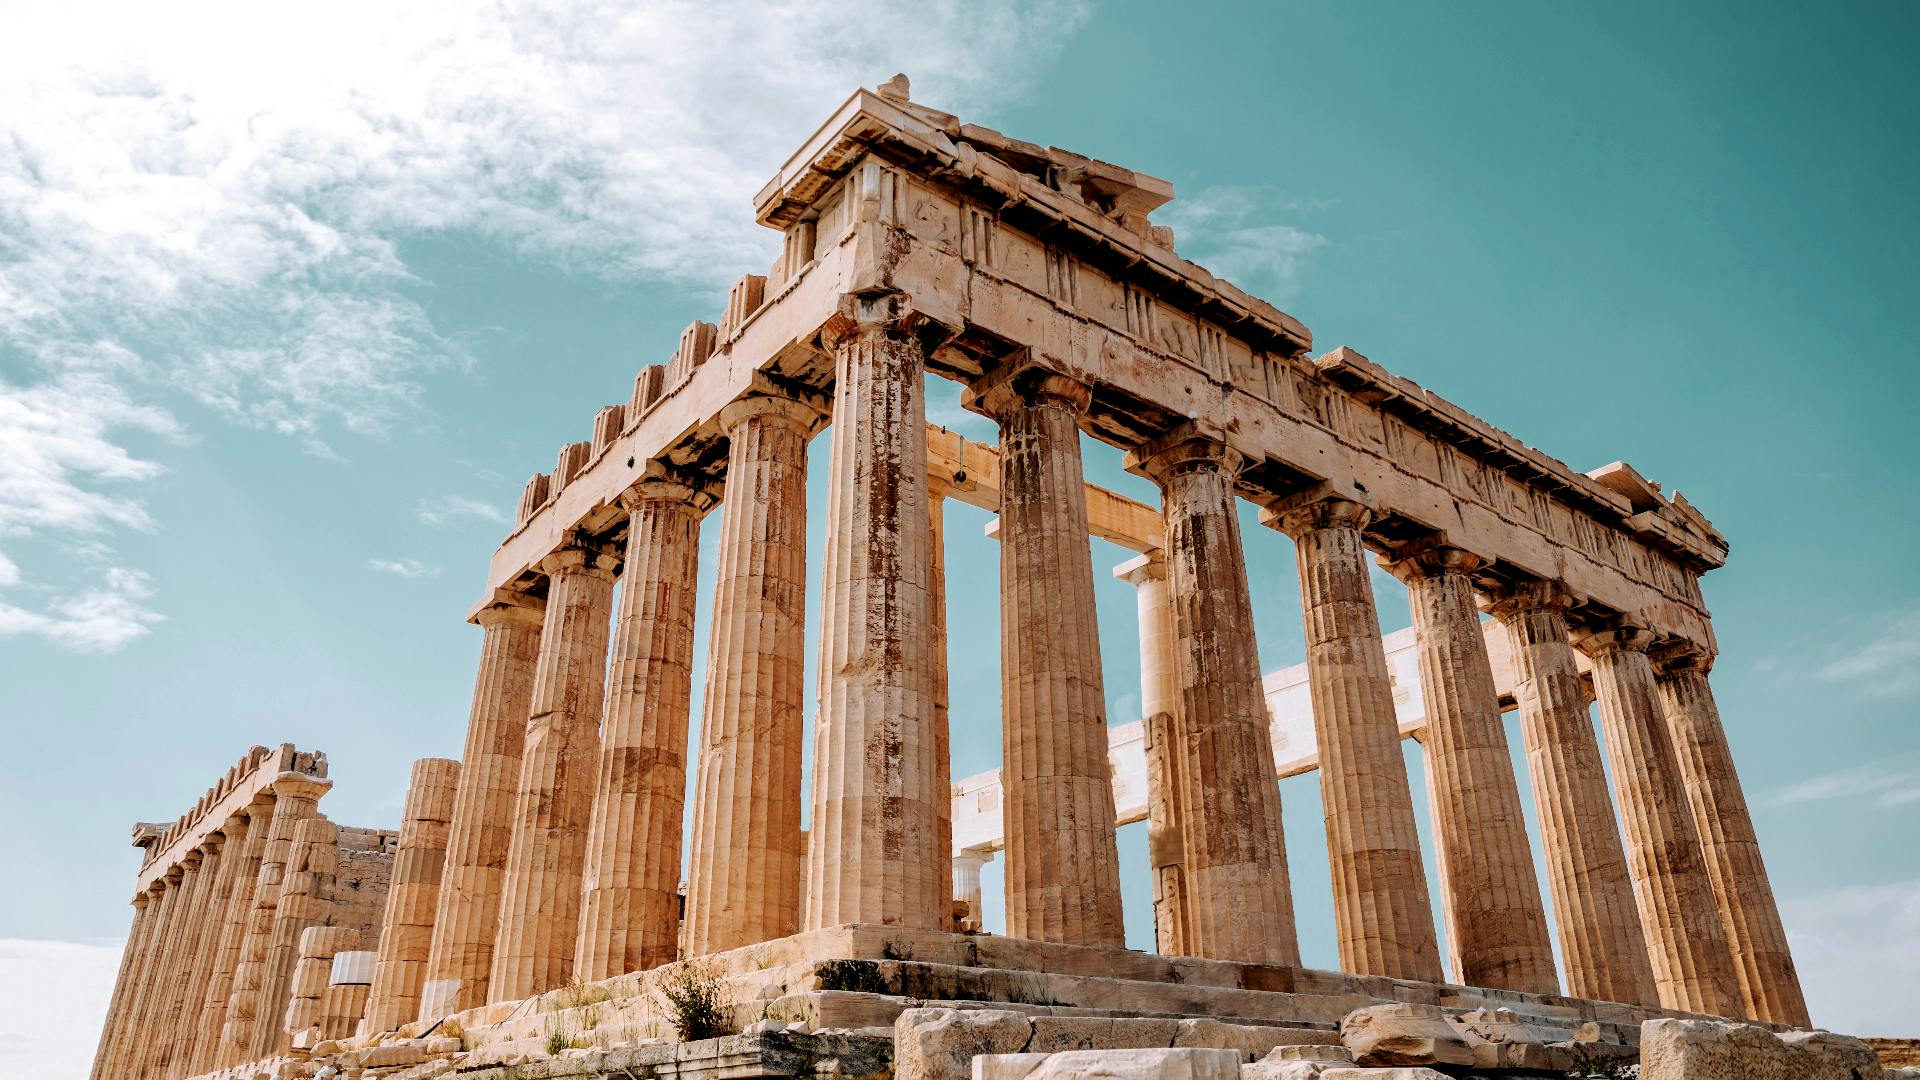 Descoberta autoguiada em Atenas, joias escondidas e história